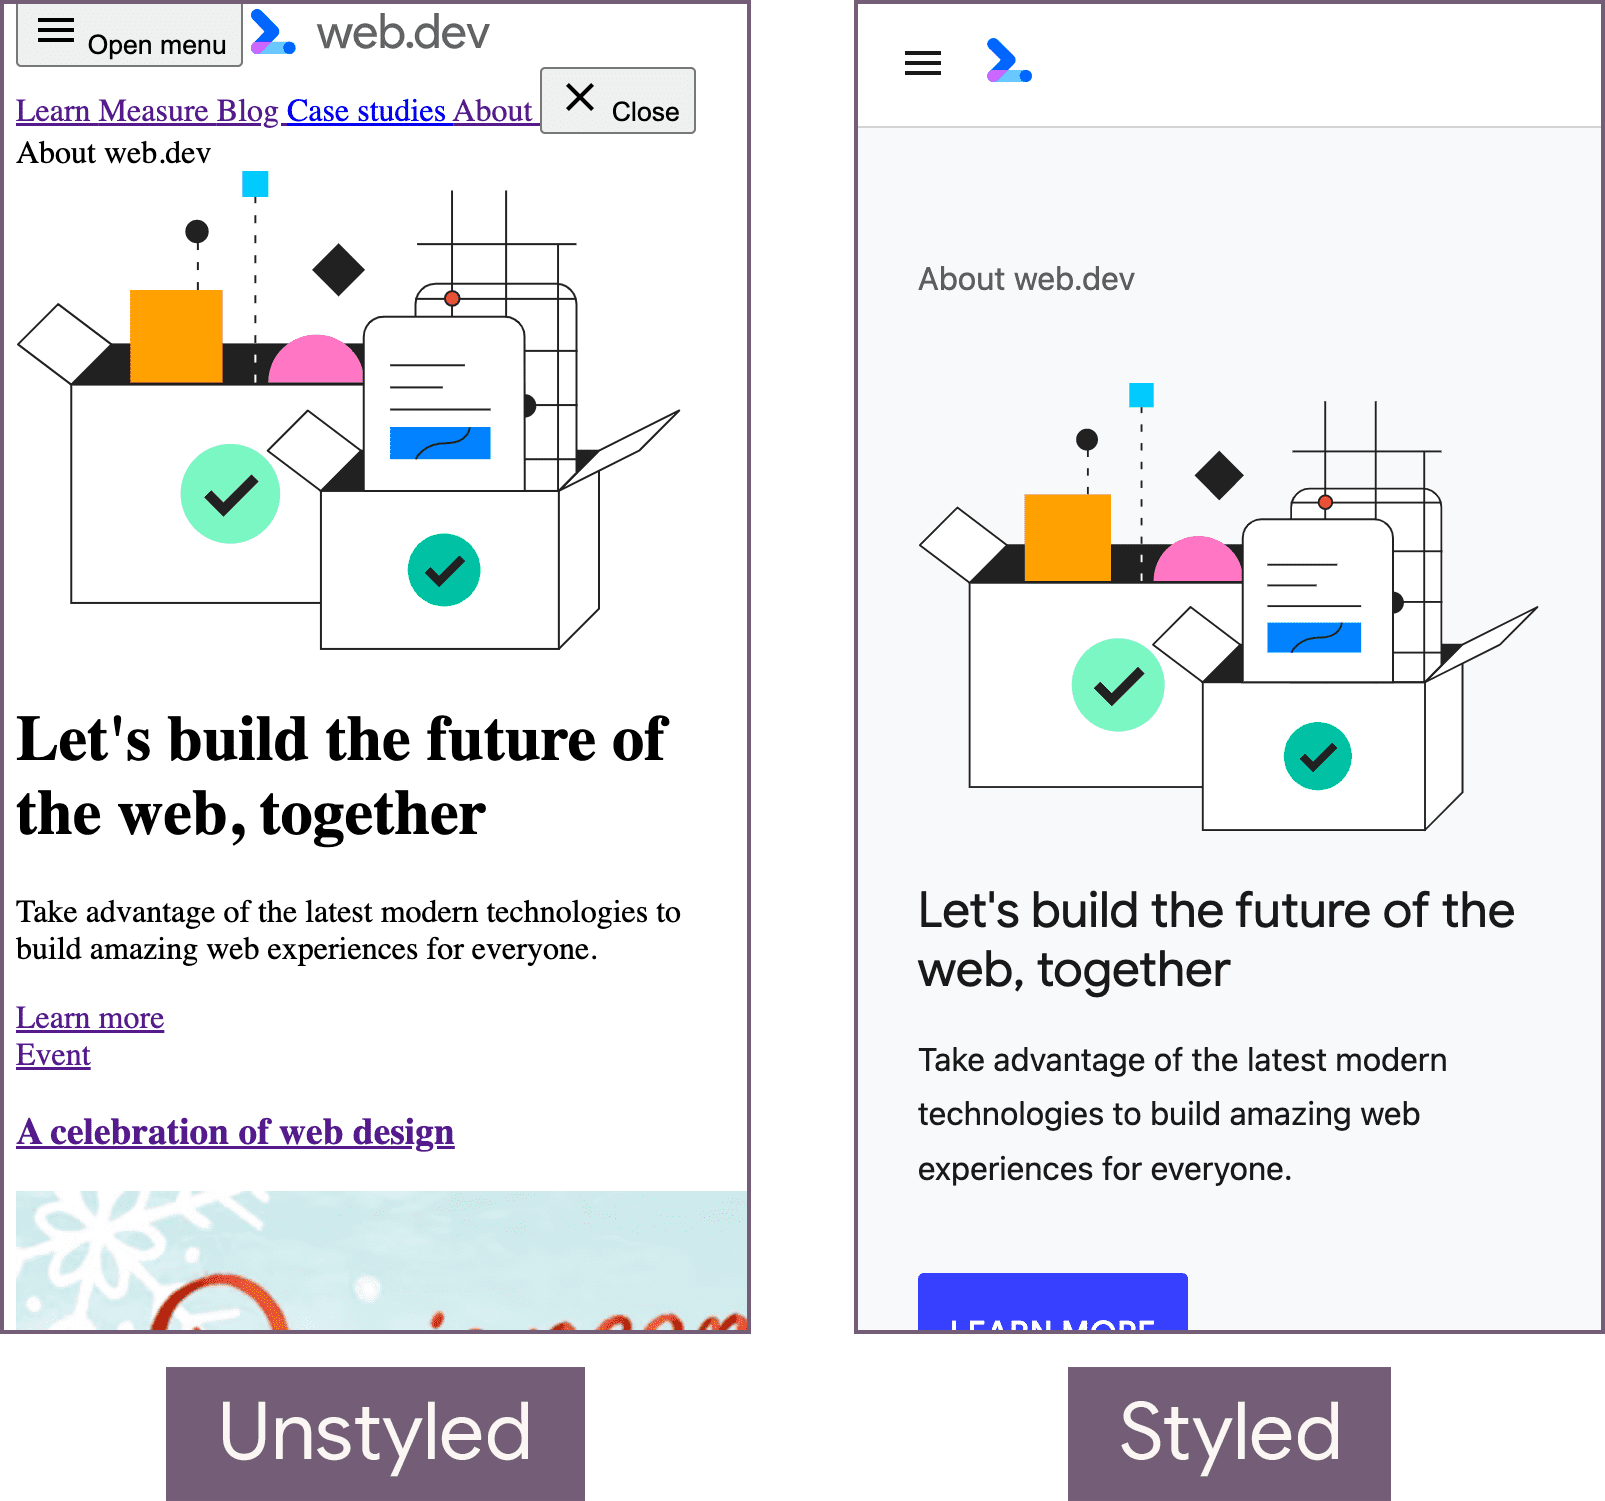 דף הבית של web.dev במצב ללא עיצוב (בצד שמאל) ובמצב המעוצב (בצד ימין).